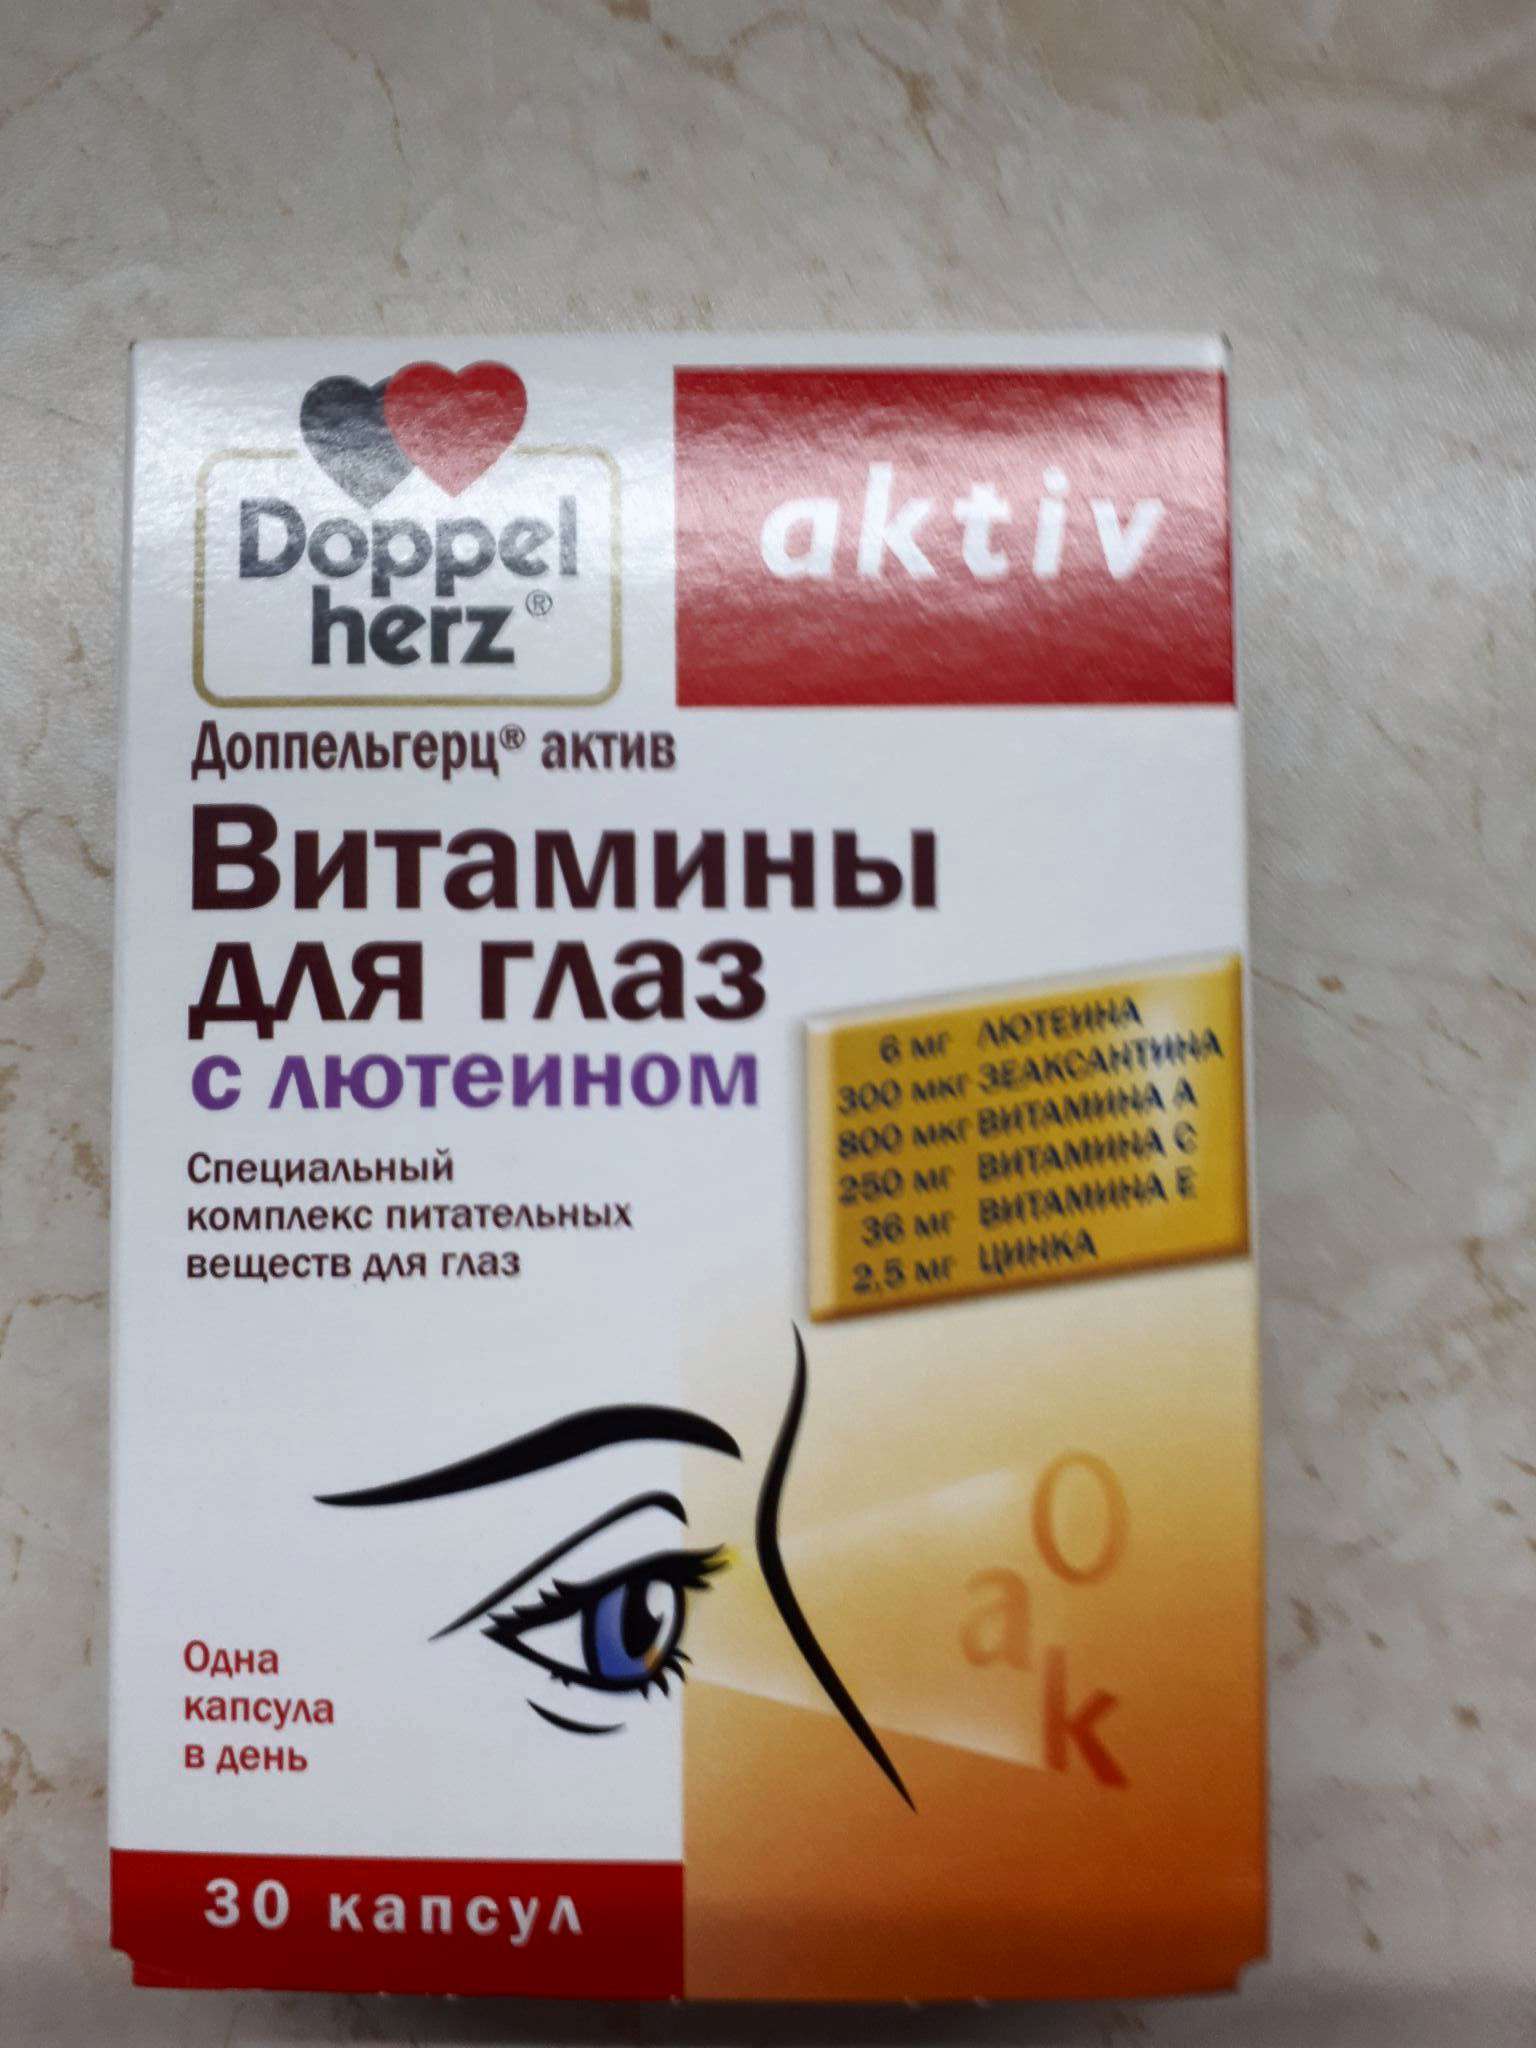 Визлея витамины отзывы врачей. Допель Герц для глаз с лютеином. Doppel Herz витамины для глаз с лютеином. Витамины для глаз детям допель Герц. Витамины для глаз лютеин форте gross Hertz.